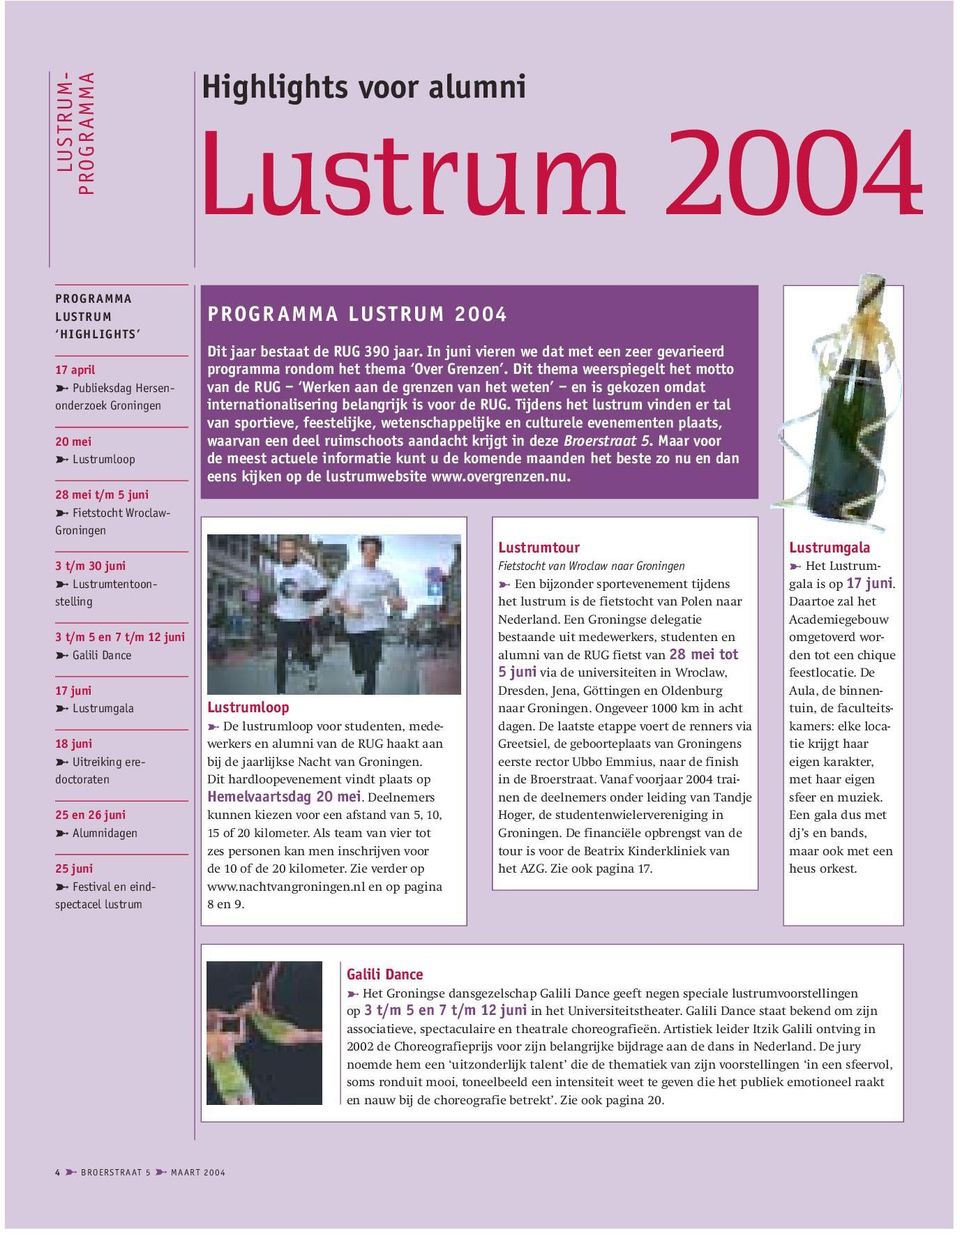 Alumnidagen 25 juni > Festival en eindspectacel lustrum PROGRAMMA LUSTRUM 2004 Dit jaar bestaat de RUG 390 jaar. In juni vieren we dat met een zeer gevarieerd programma rondom het thema Over Grenzen.